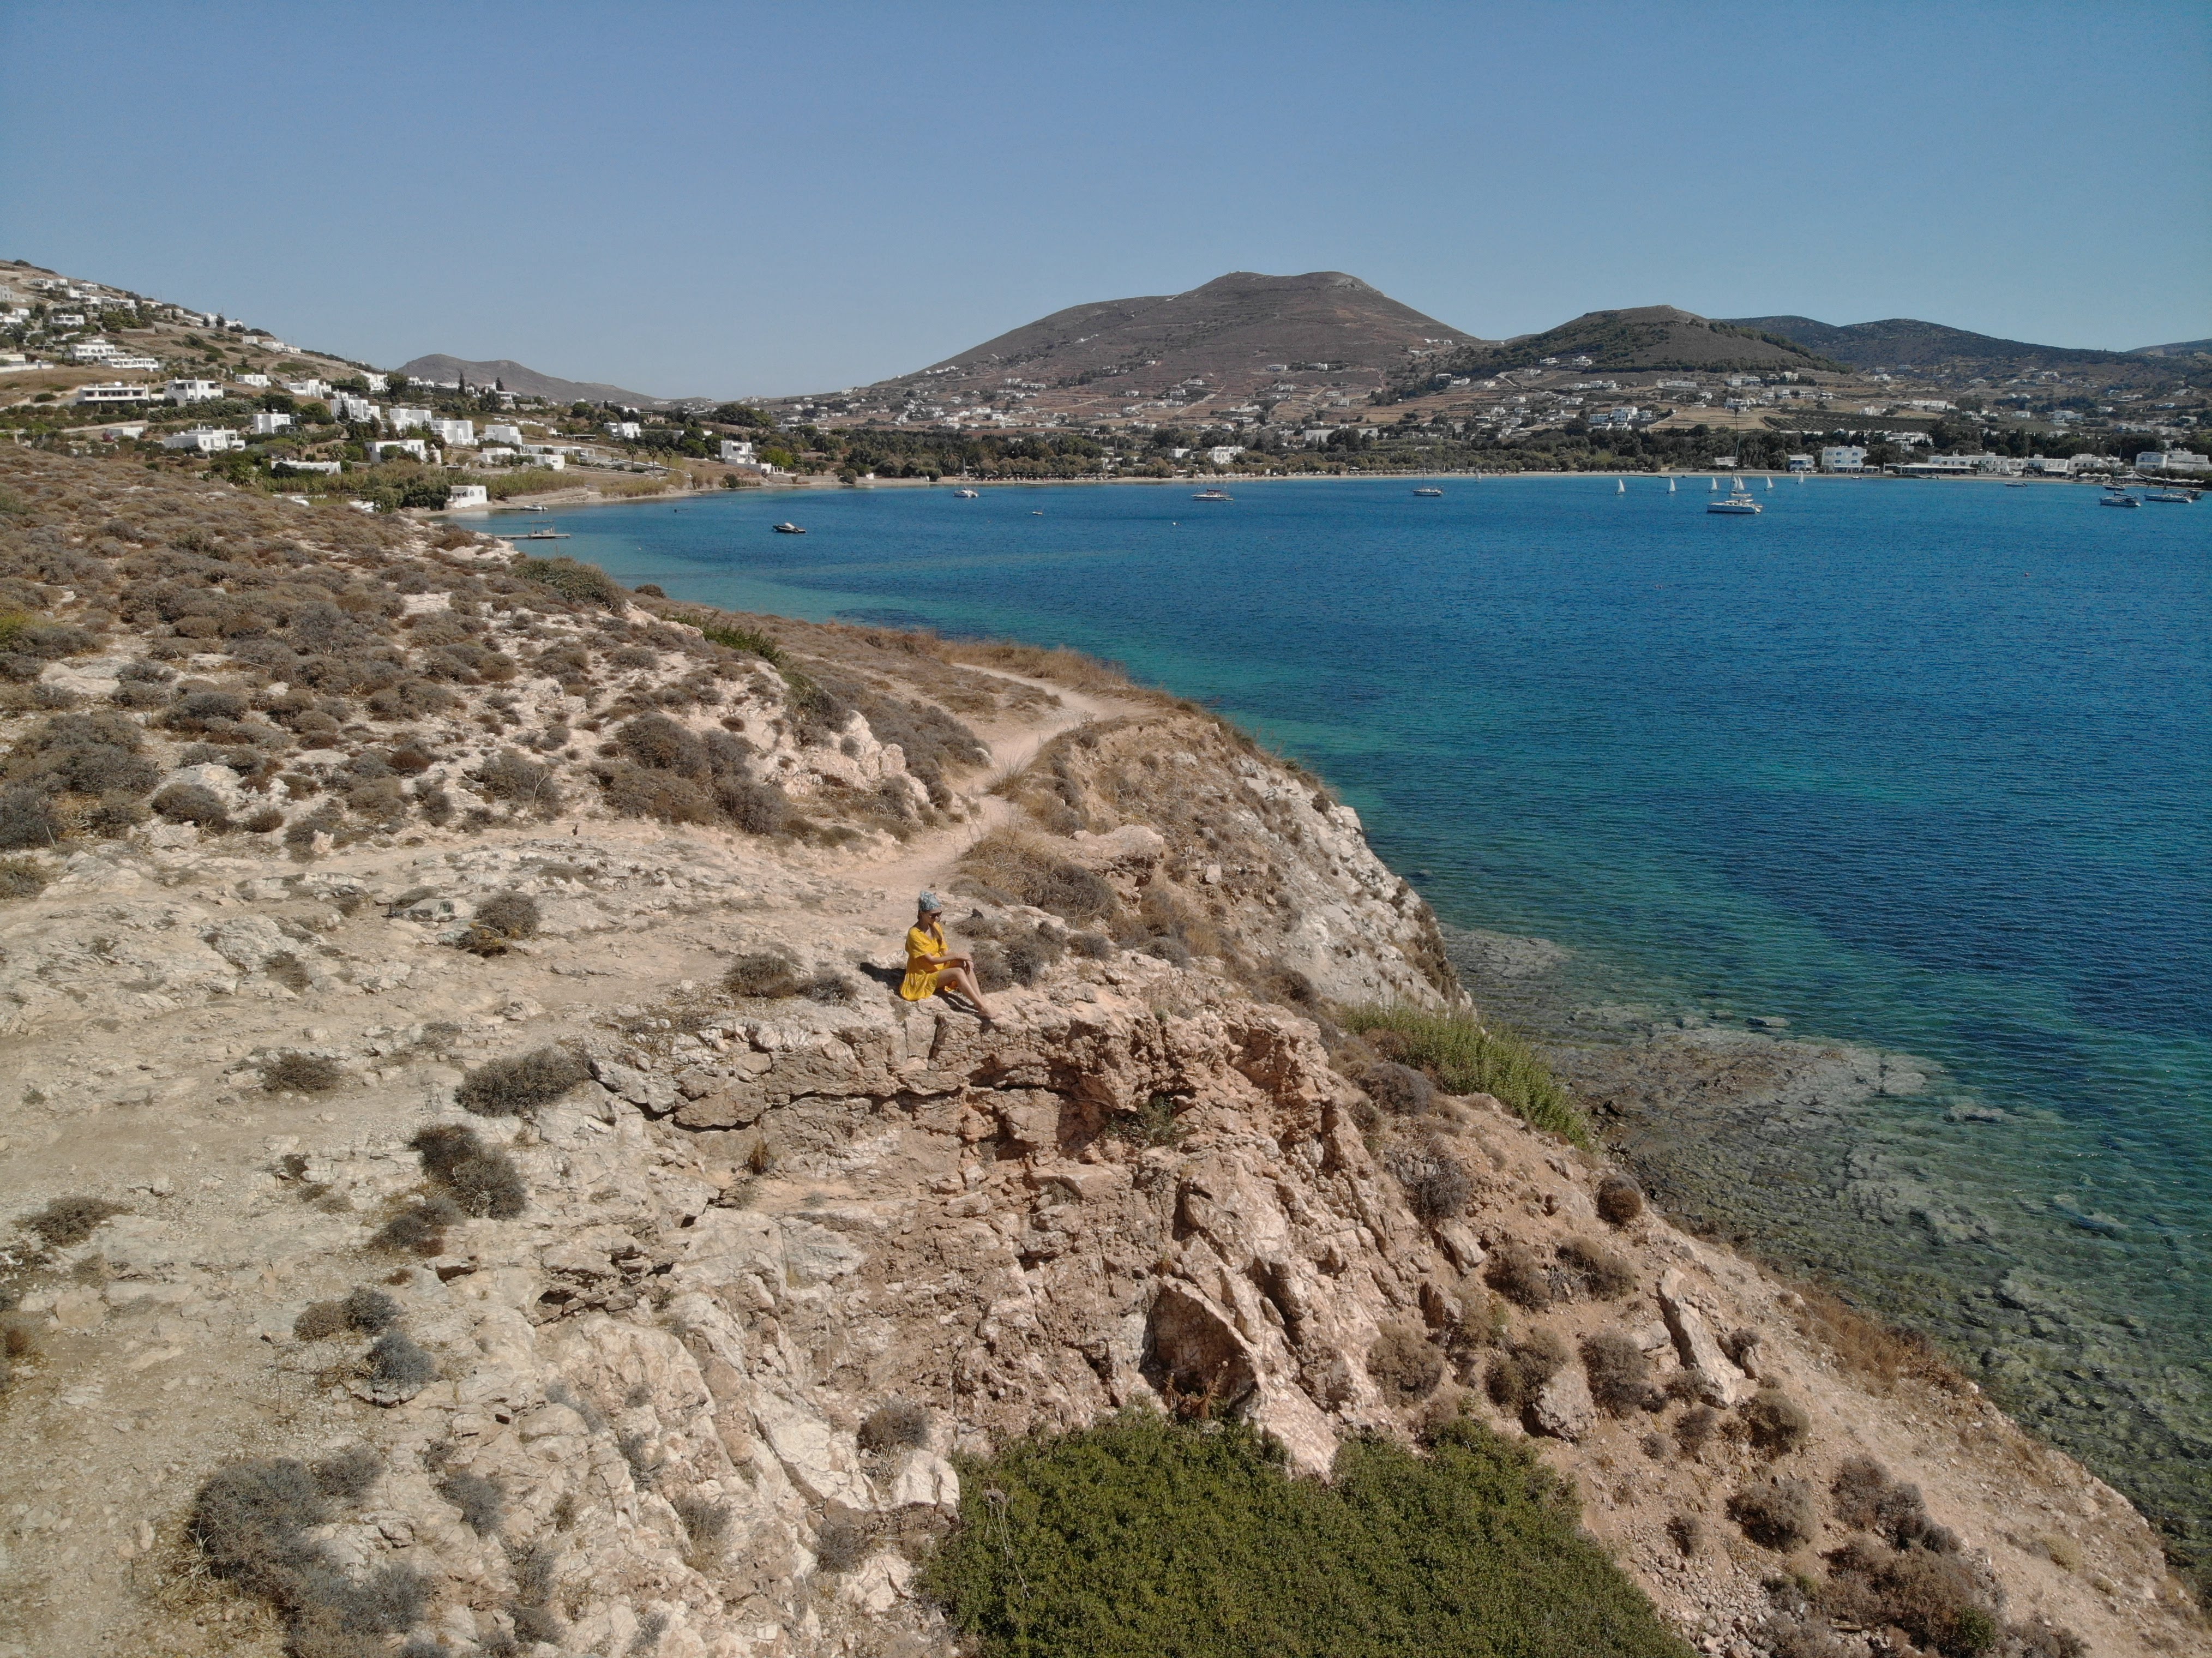 Trail from Parikia to Krios and Marcello beaches